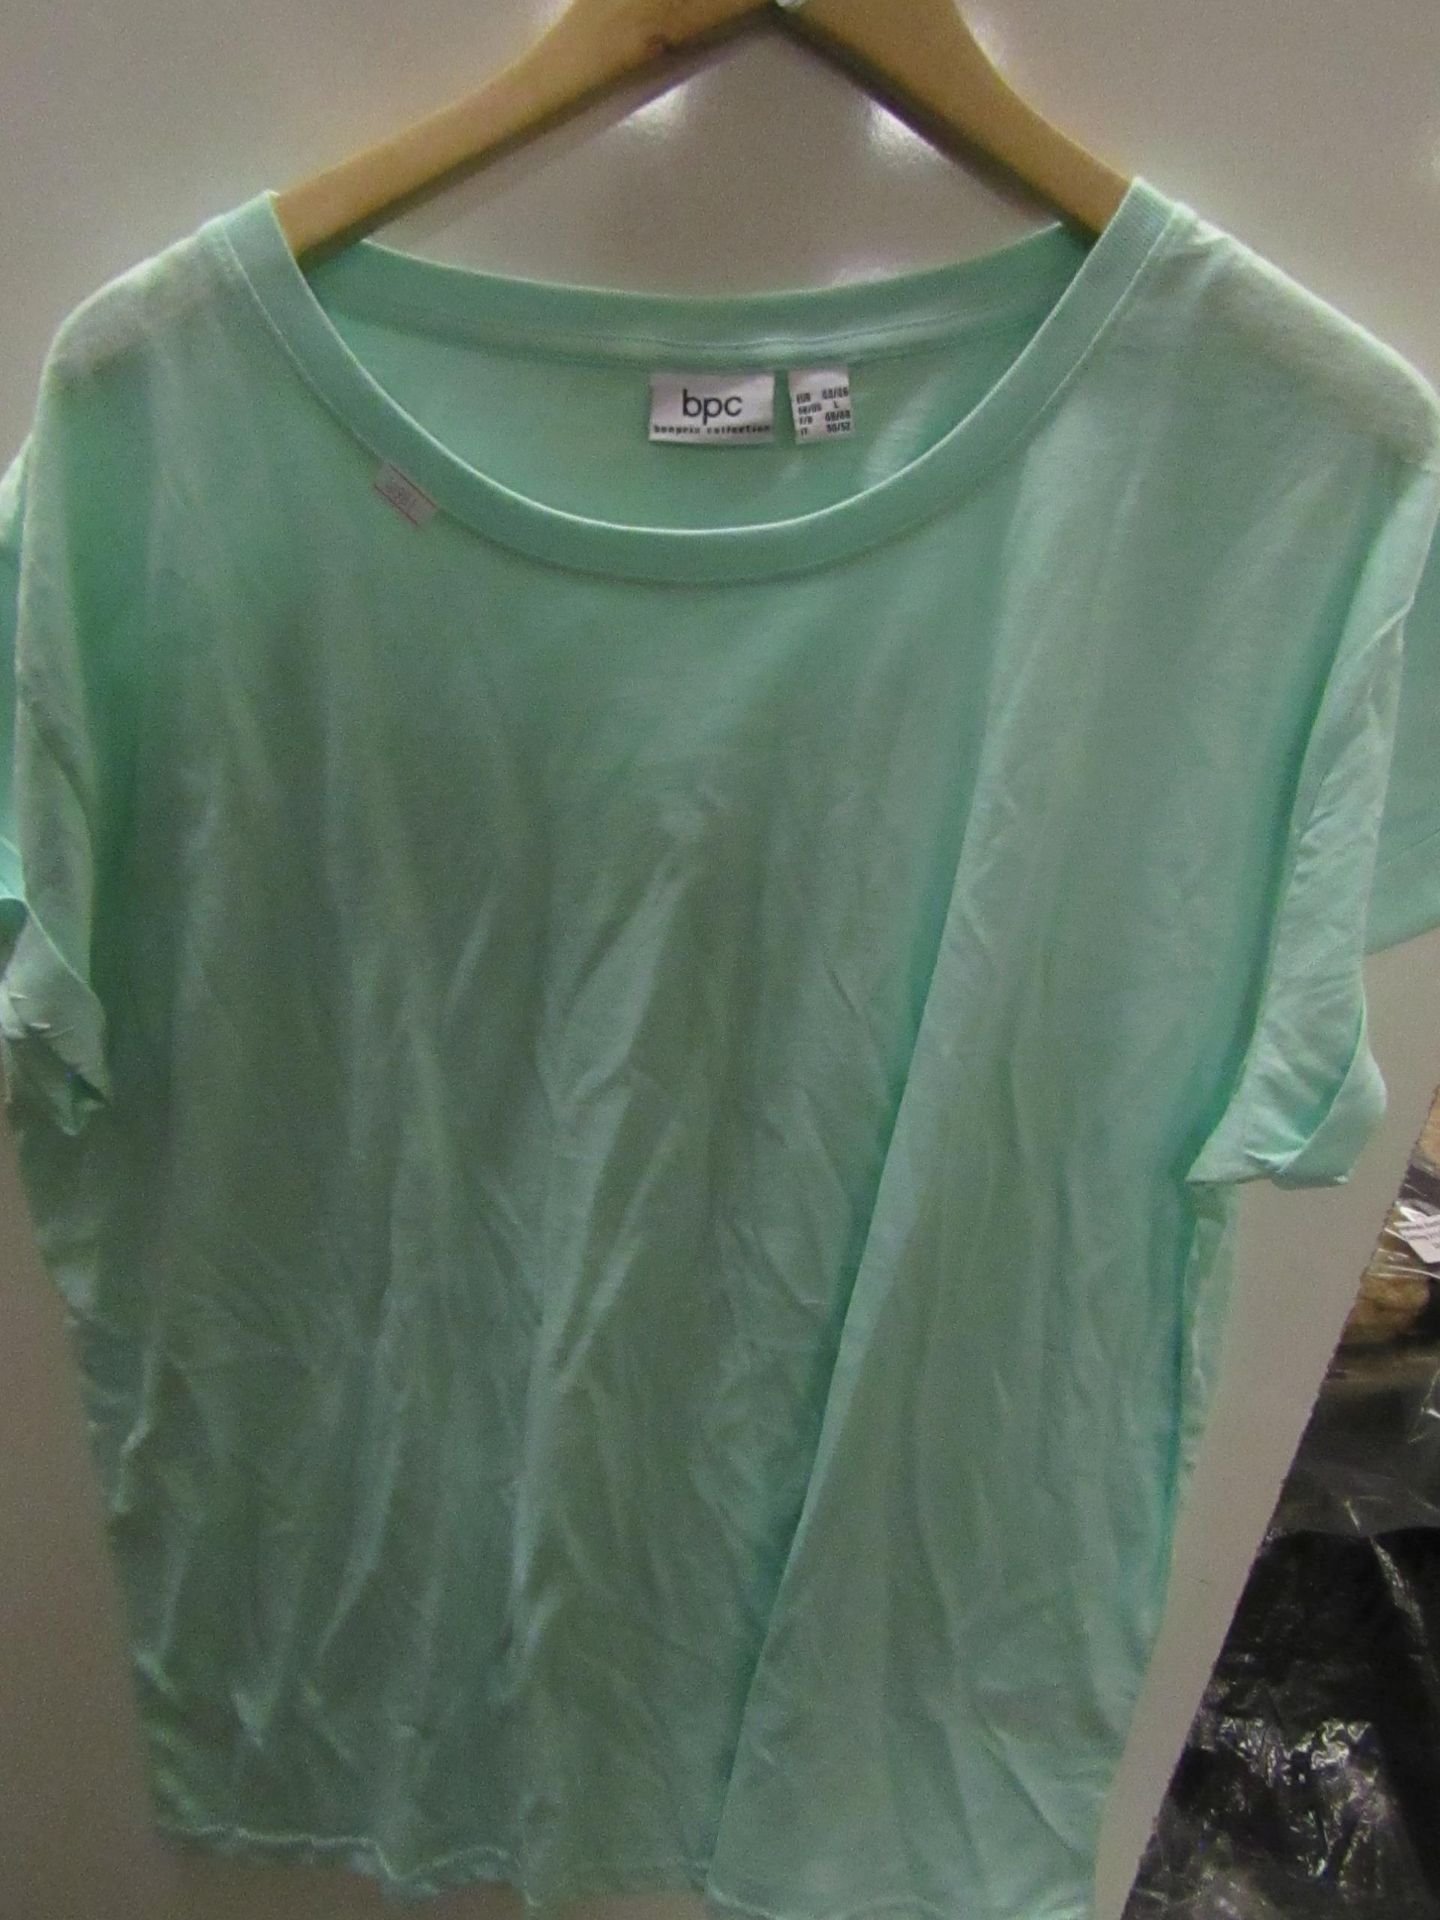 BPC T/Shirt Mint Green Size L Looks Unworn